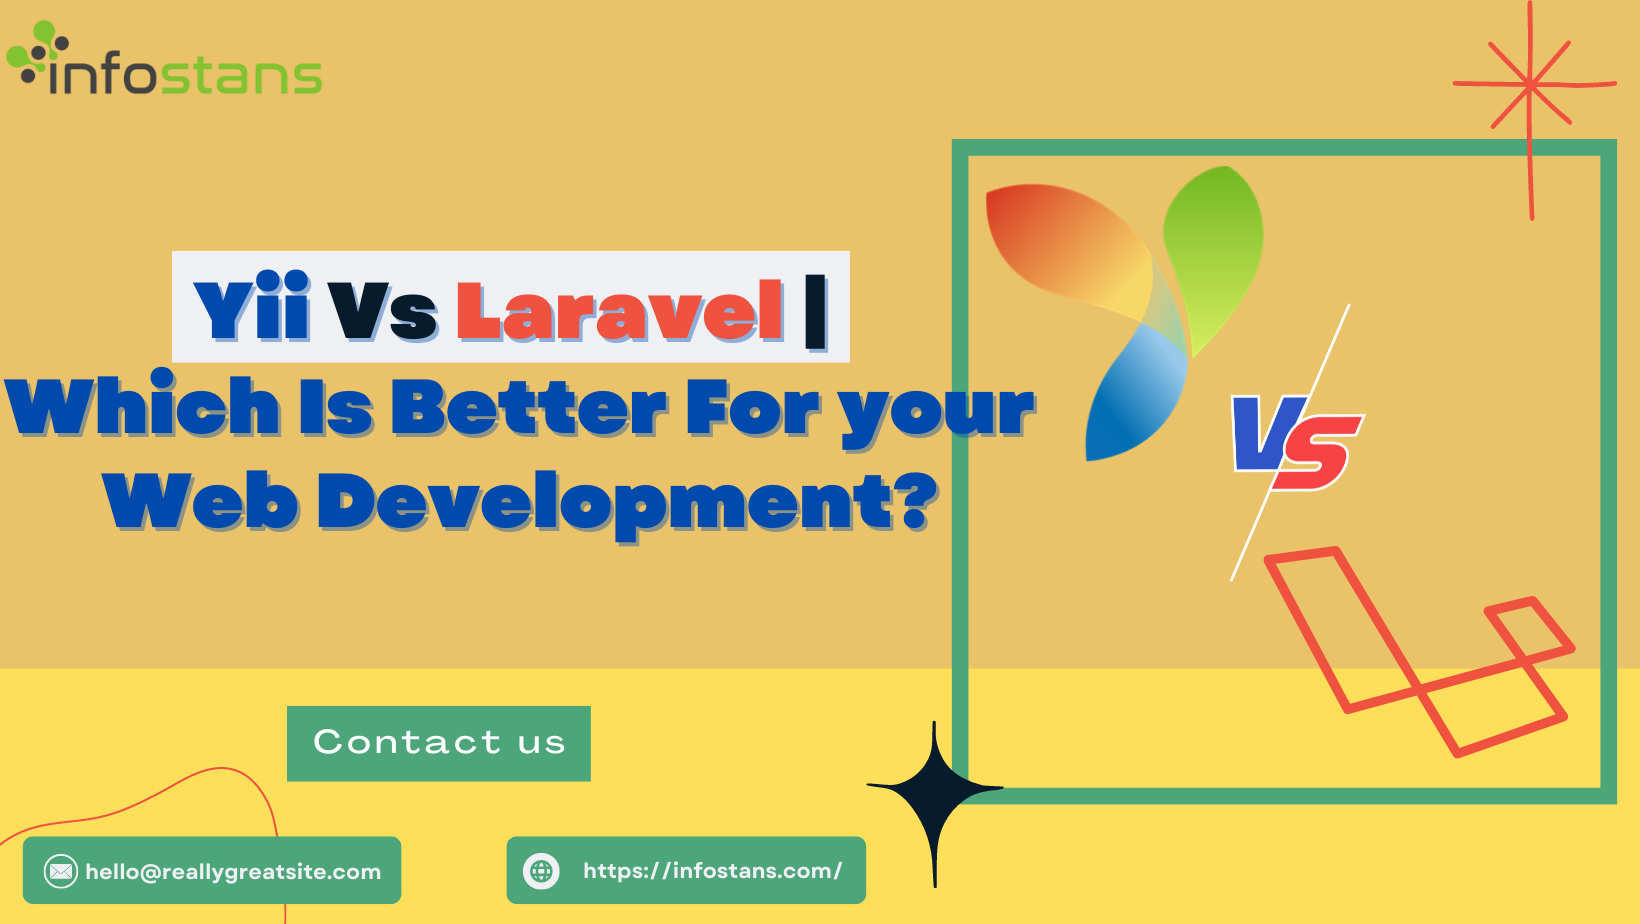 Yii vs Laravel: Which Framework Is Better For Web Development?